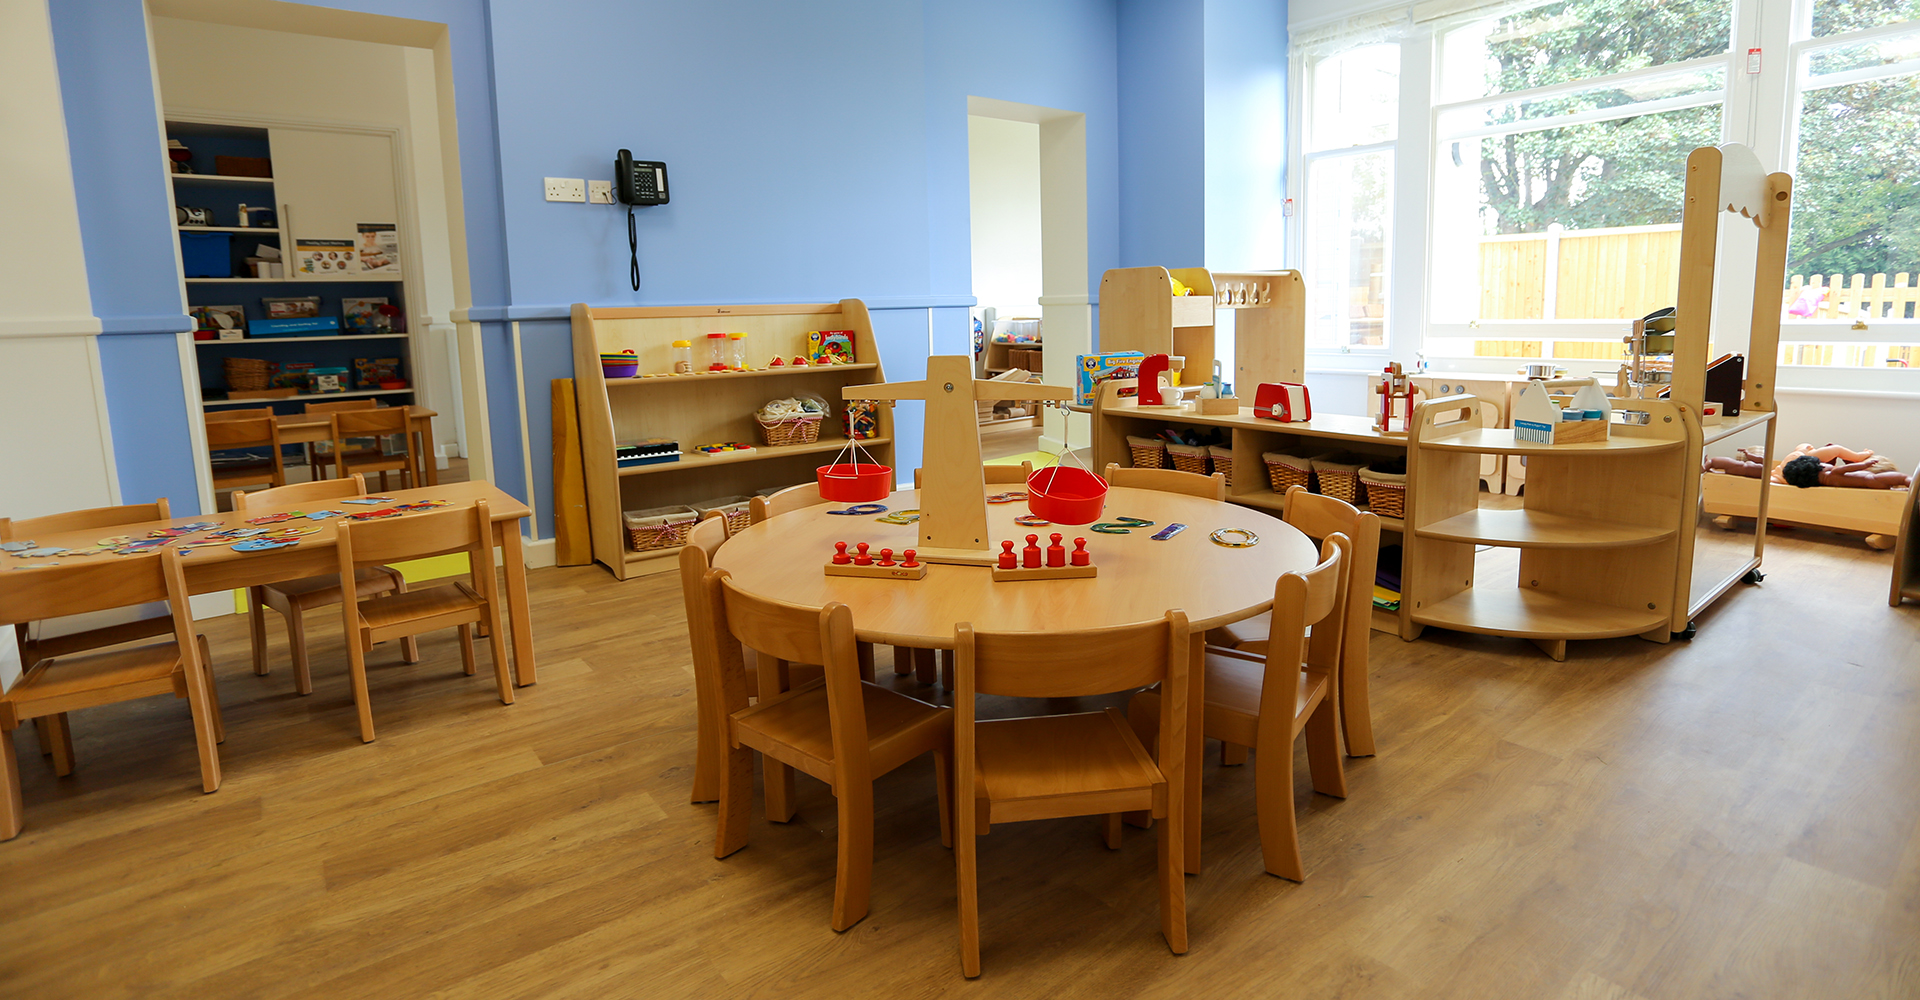 Basingstoke Copper Beeches Preschool Room